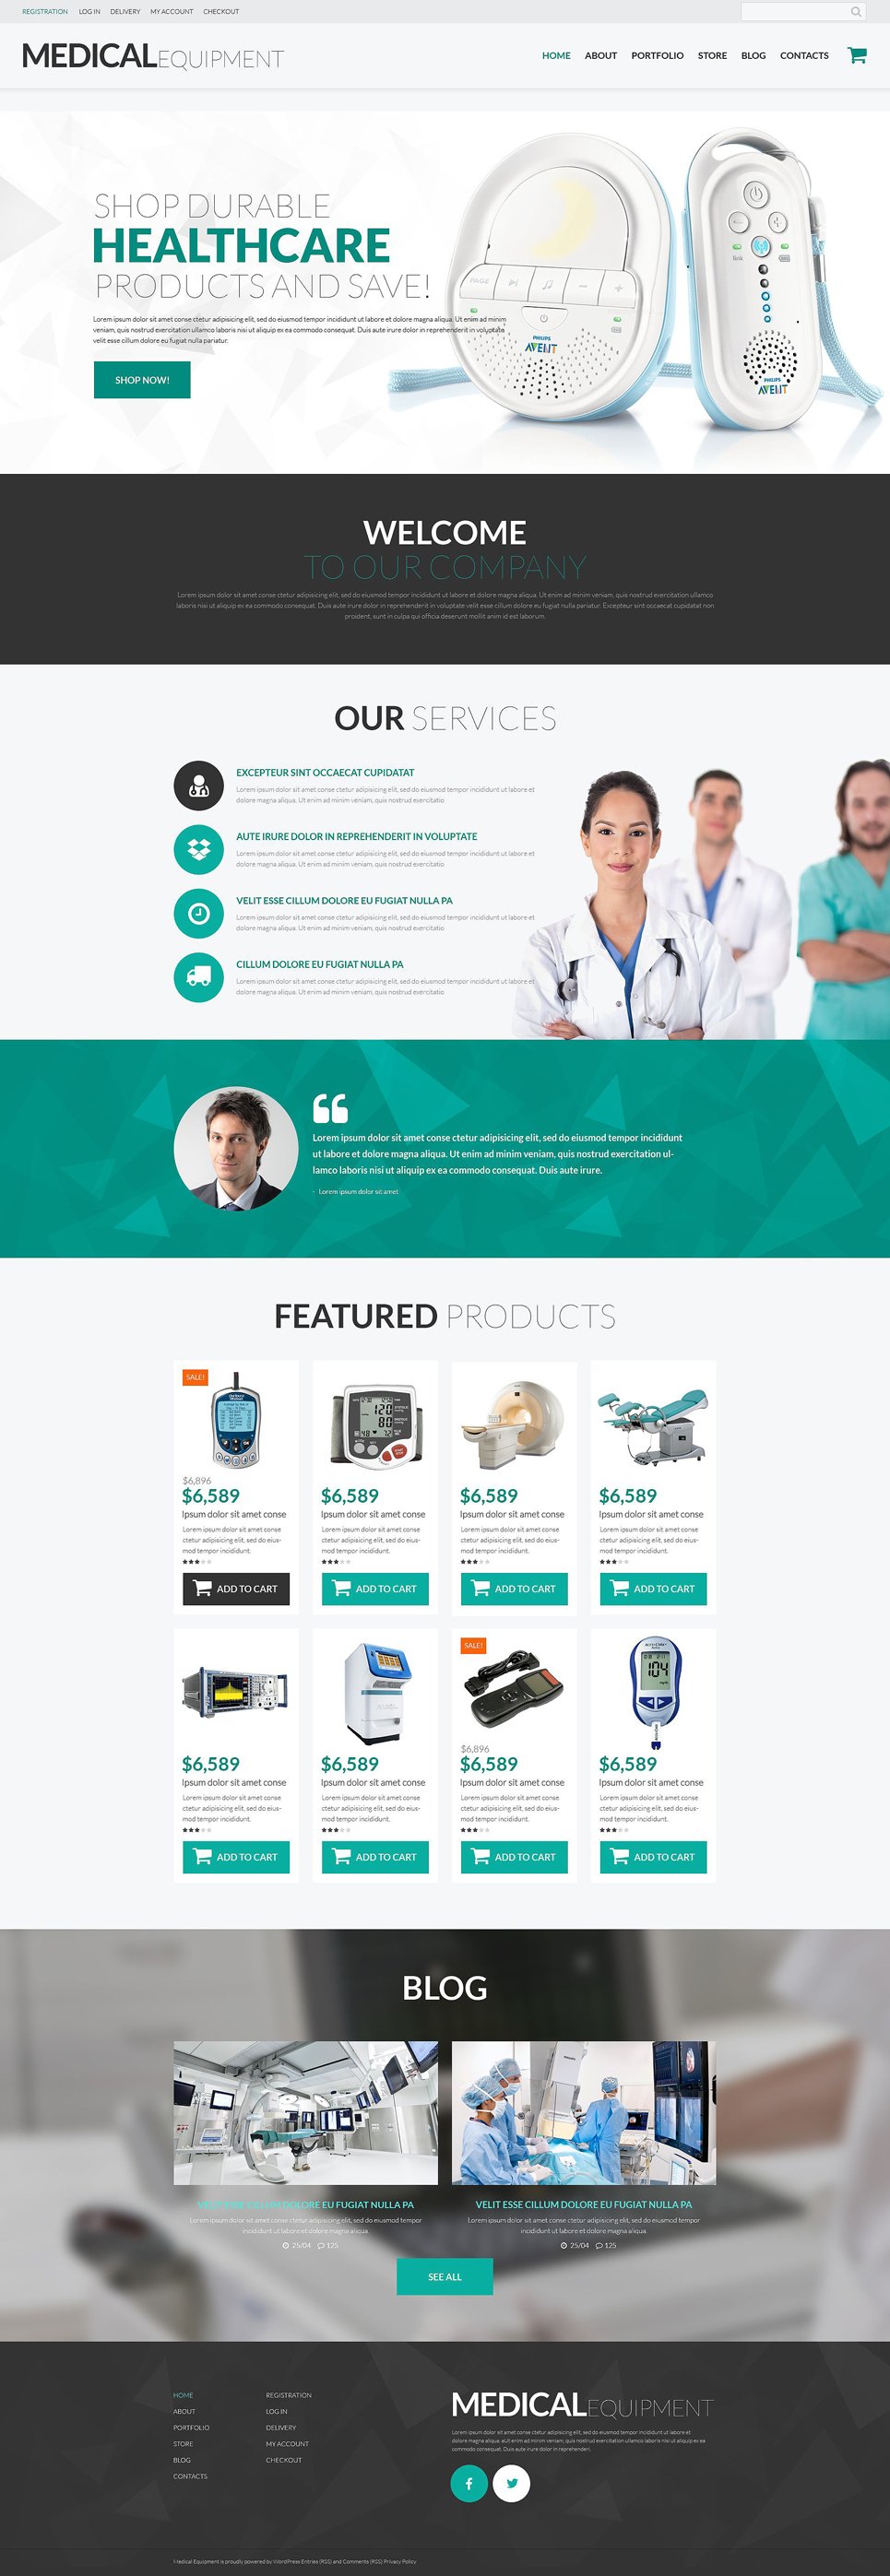 Medical Equipment Responsive WooCommerce Theme New Screenshots BIG